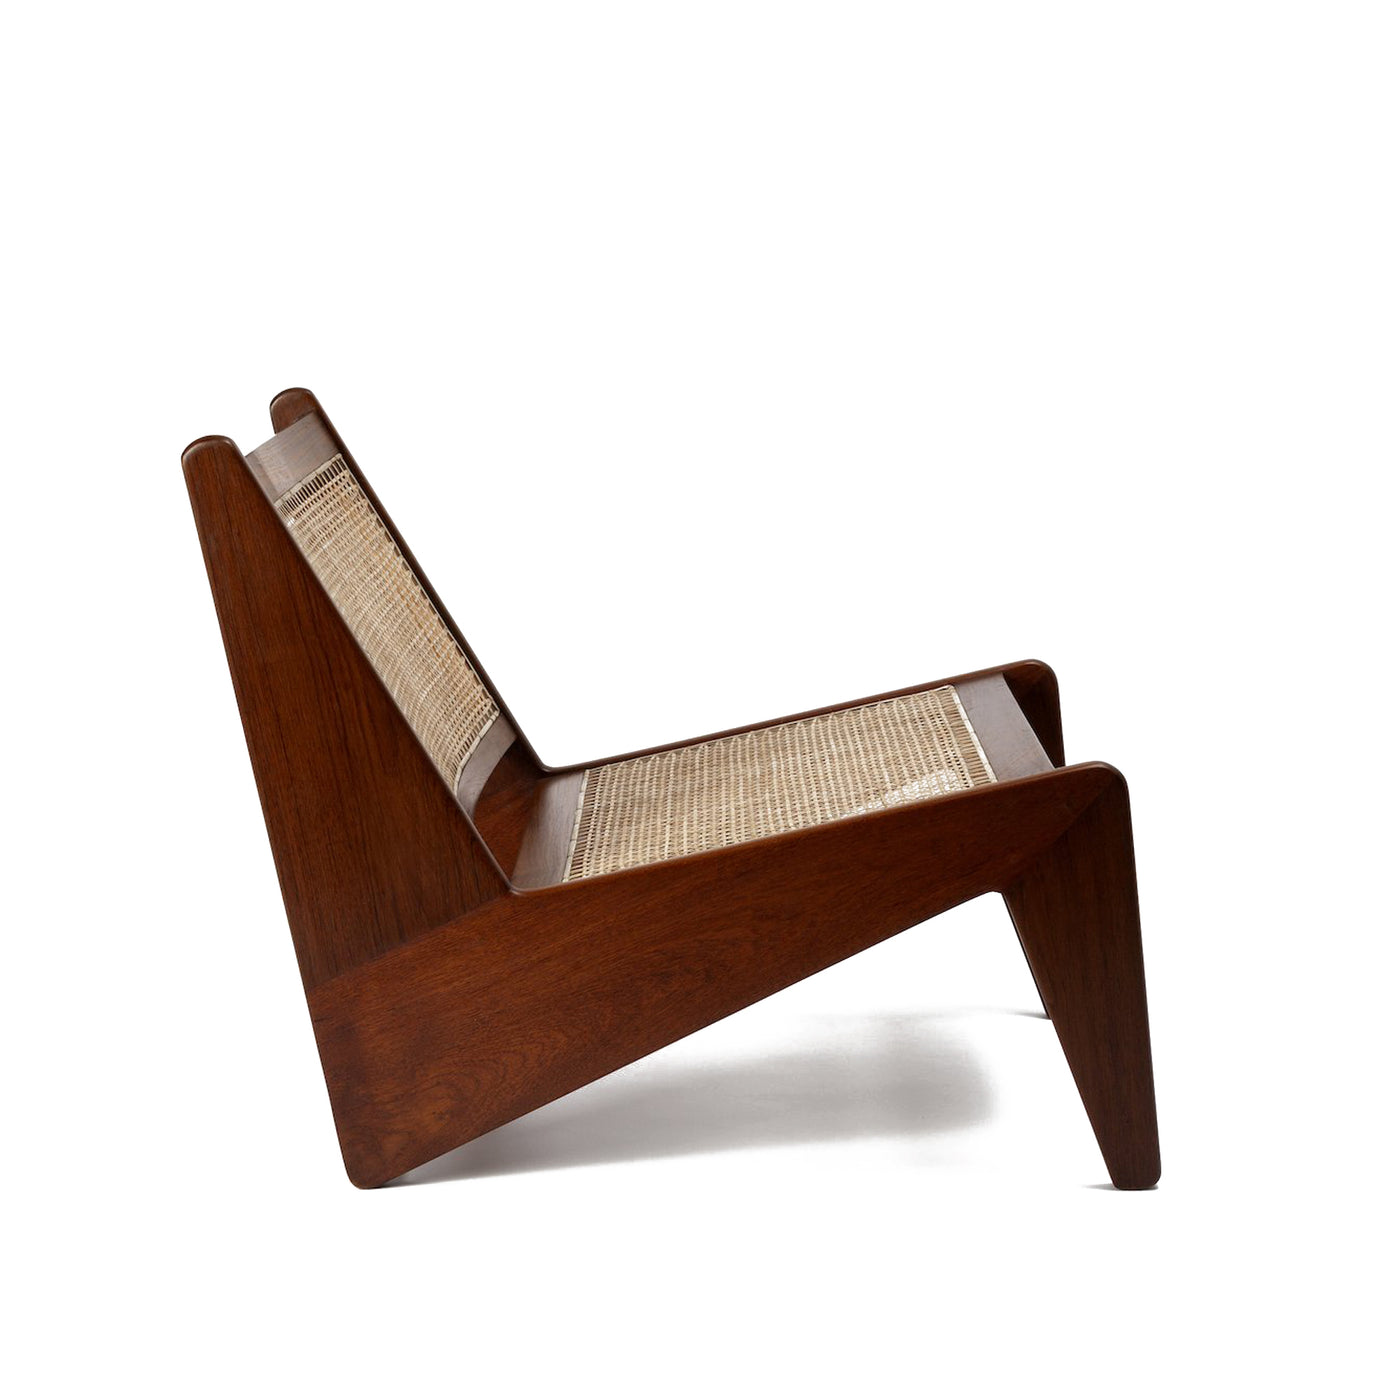 Pierre Jaenneret, židle podle pierre jeanneret, design 50. let, minimaistická židle, Srelle, Židle do minimalistických interiérů, luxusní židle, Pierre židle, kangaroo chair